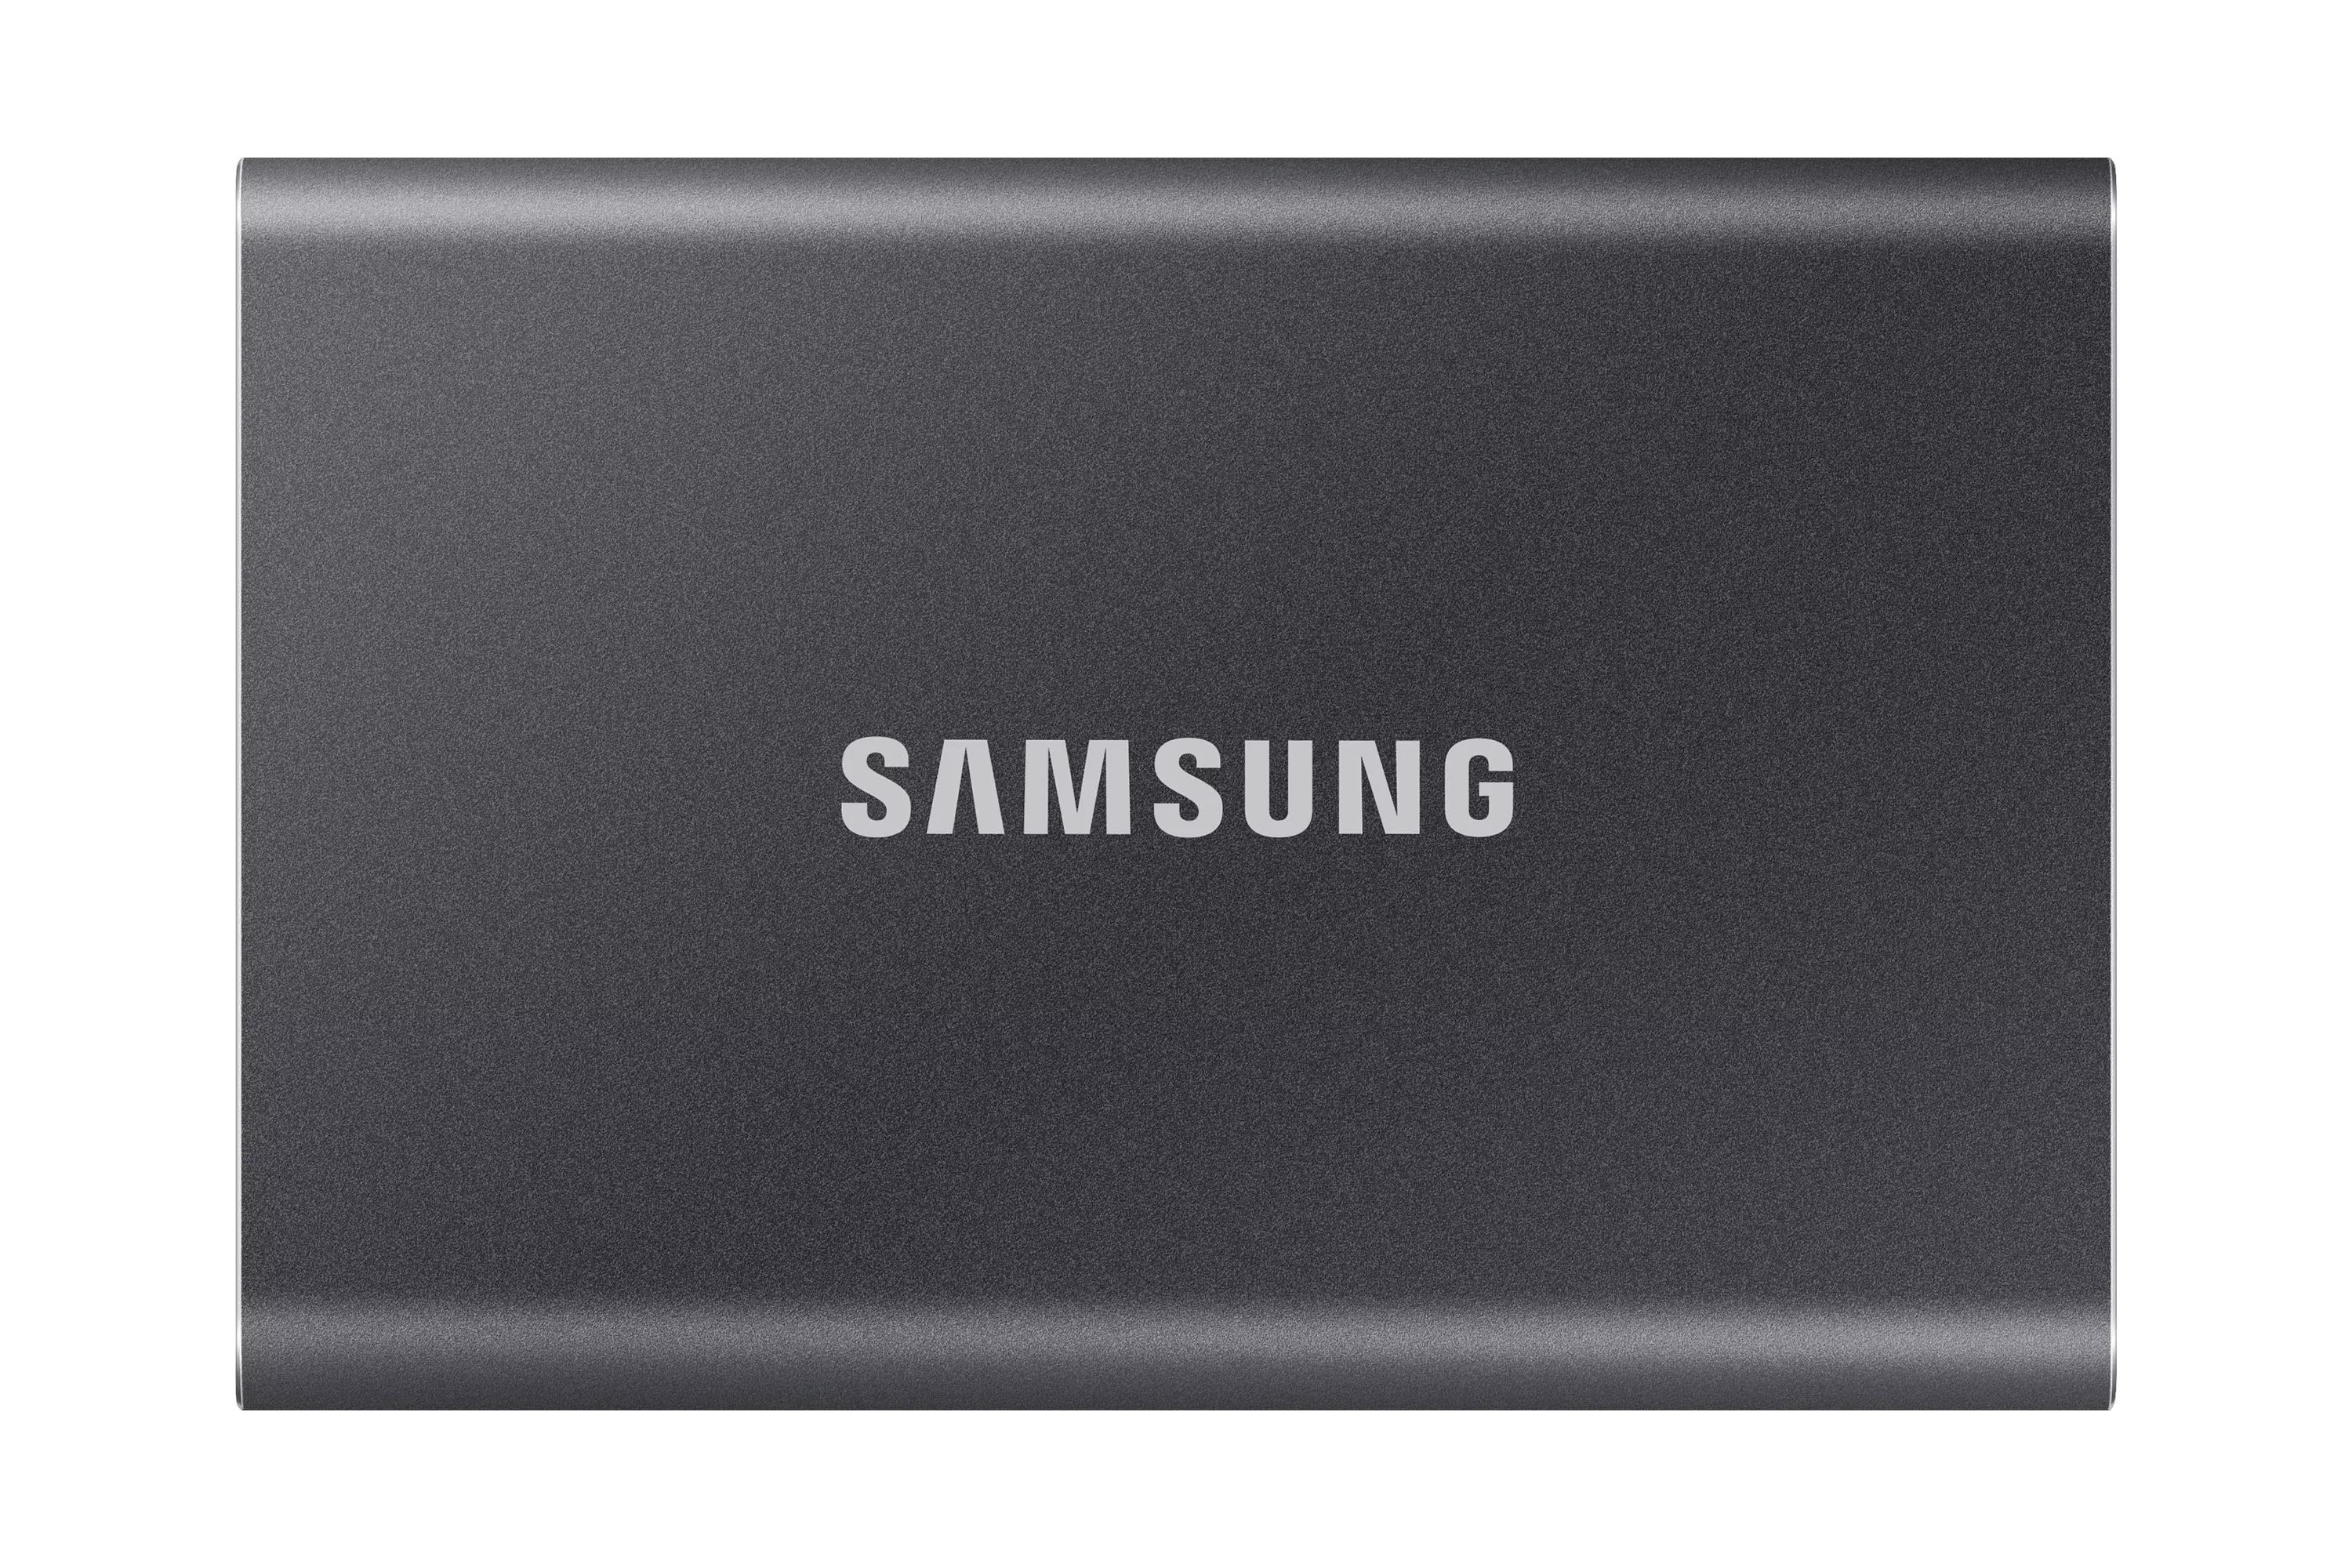 Vente SAMSUNG Portable SSD T7 500Go extern USB 3.2 Gen 2 au meilleur prix